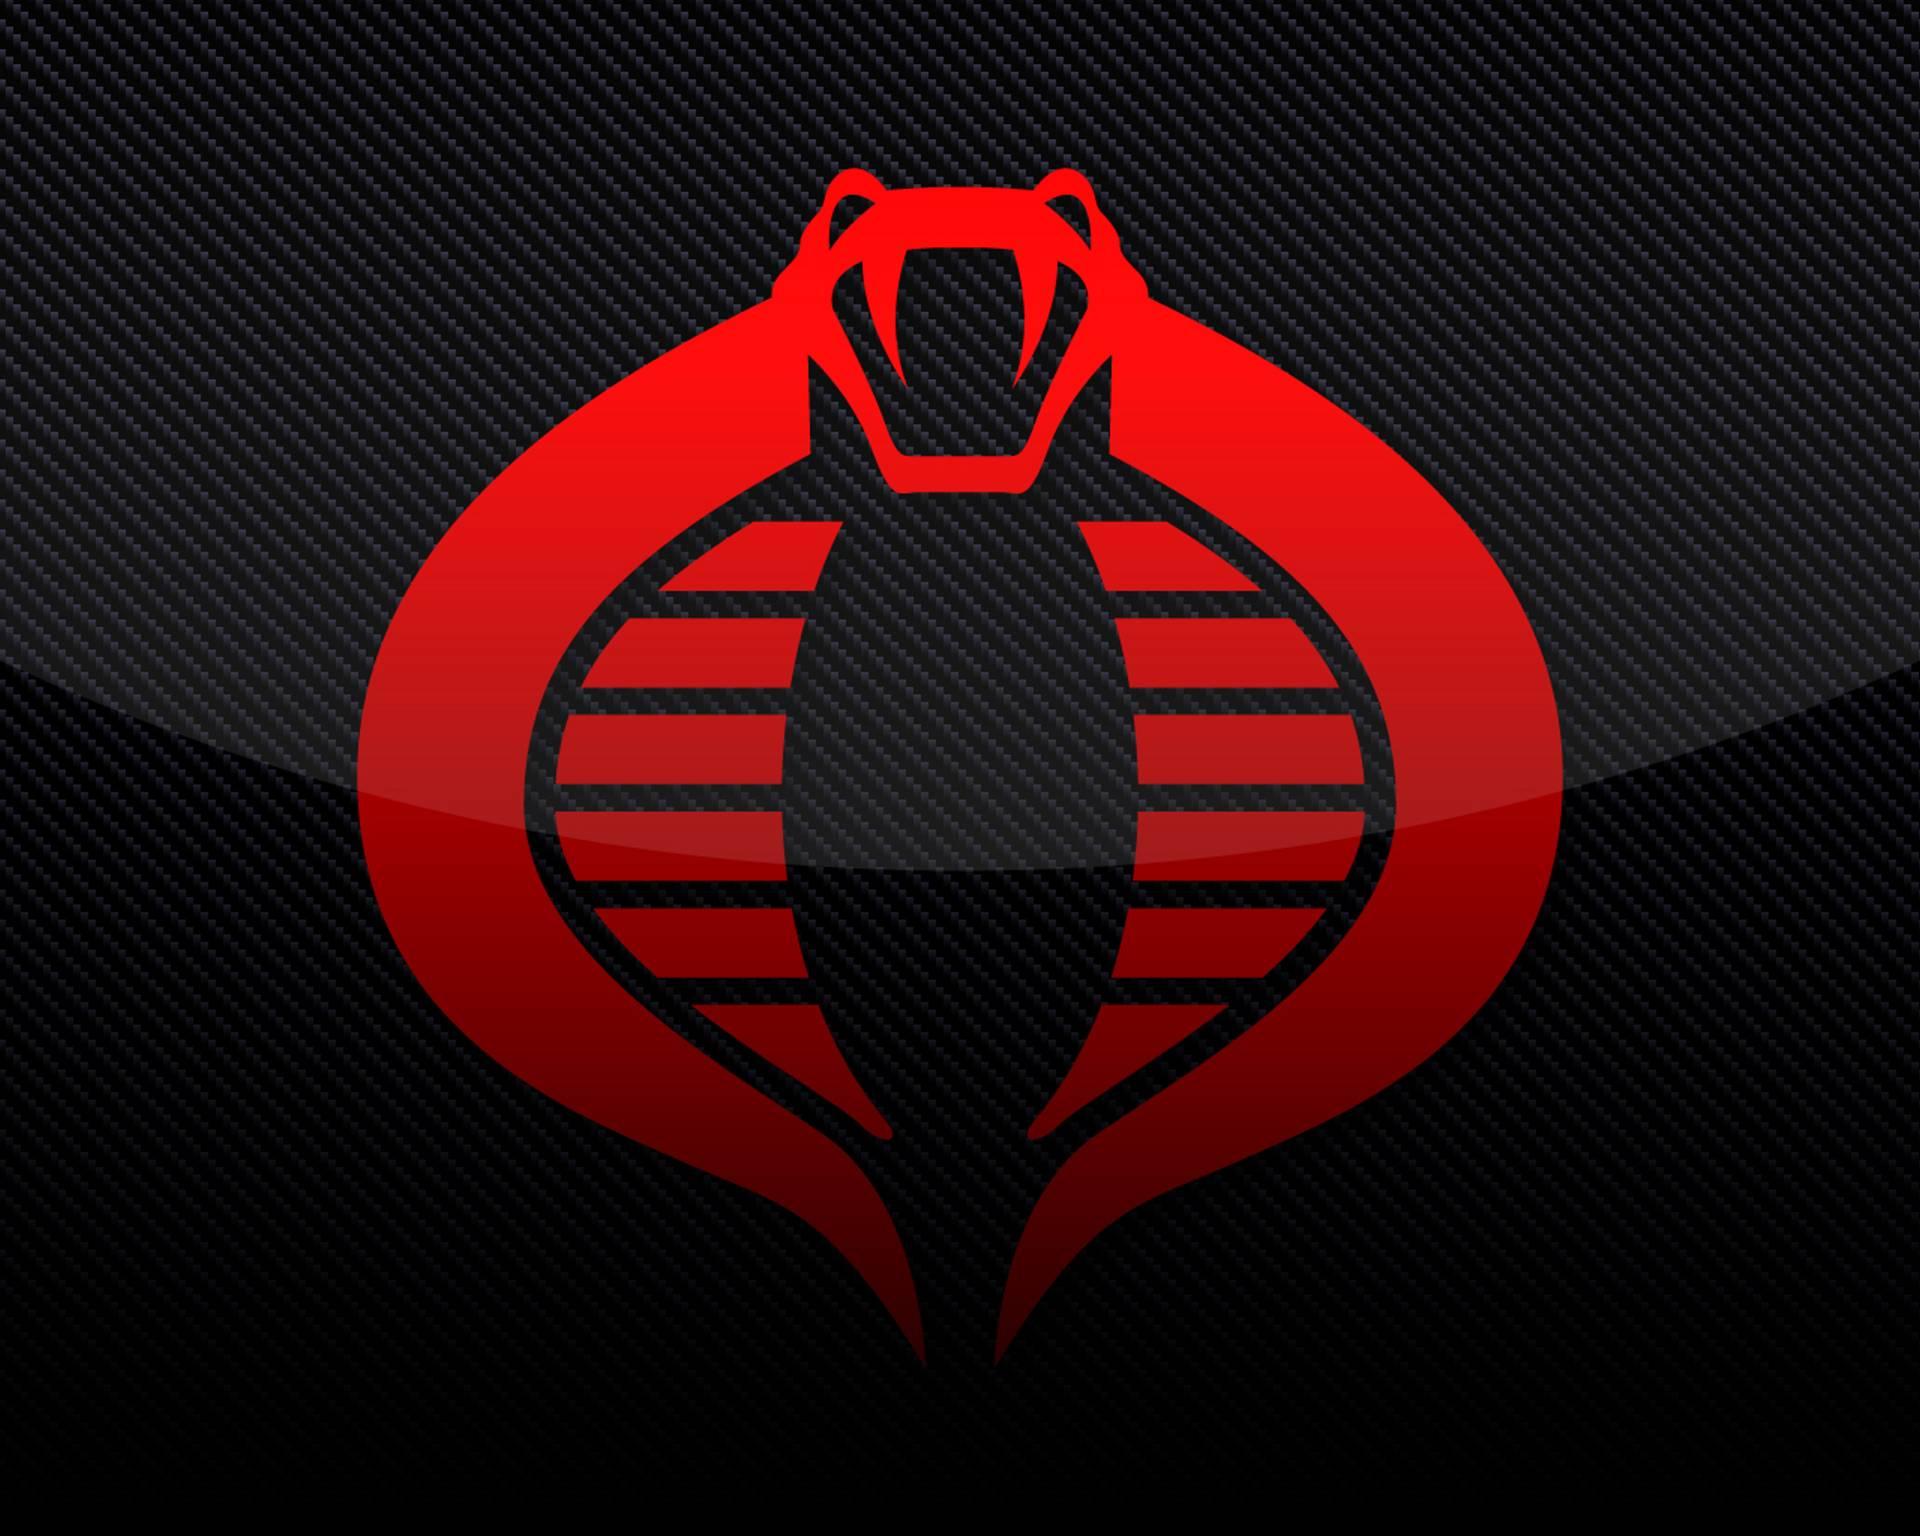 Cobra Commander Wallpaper